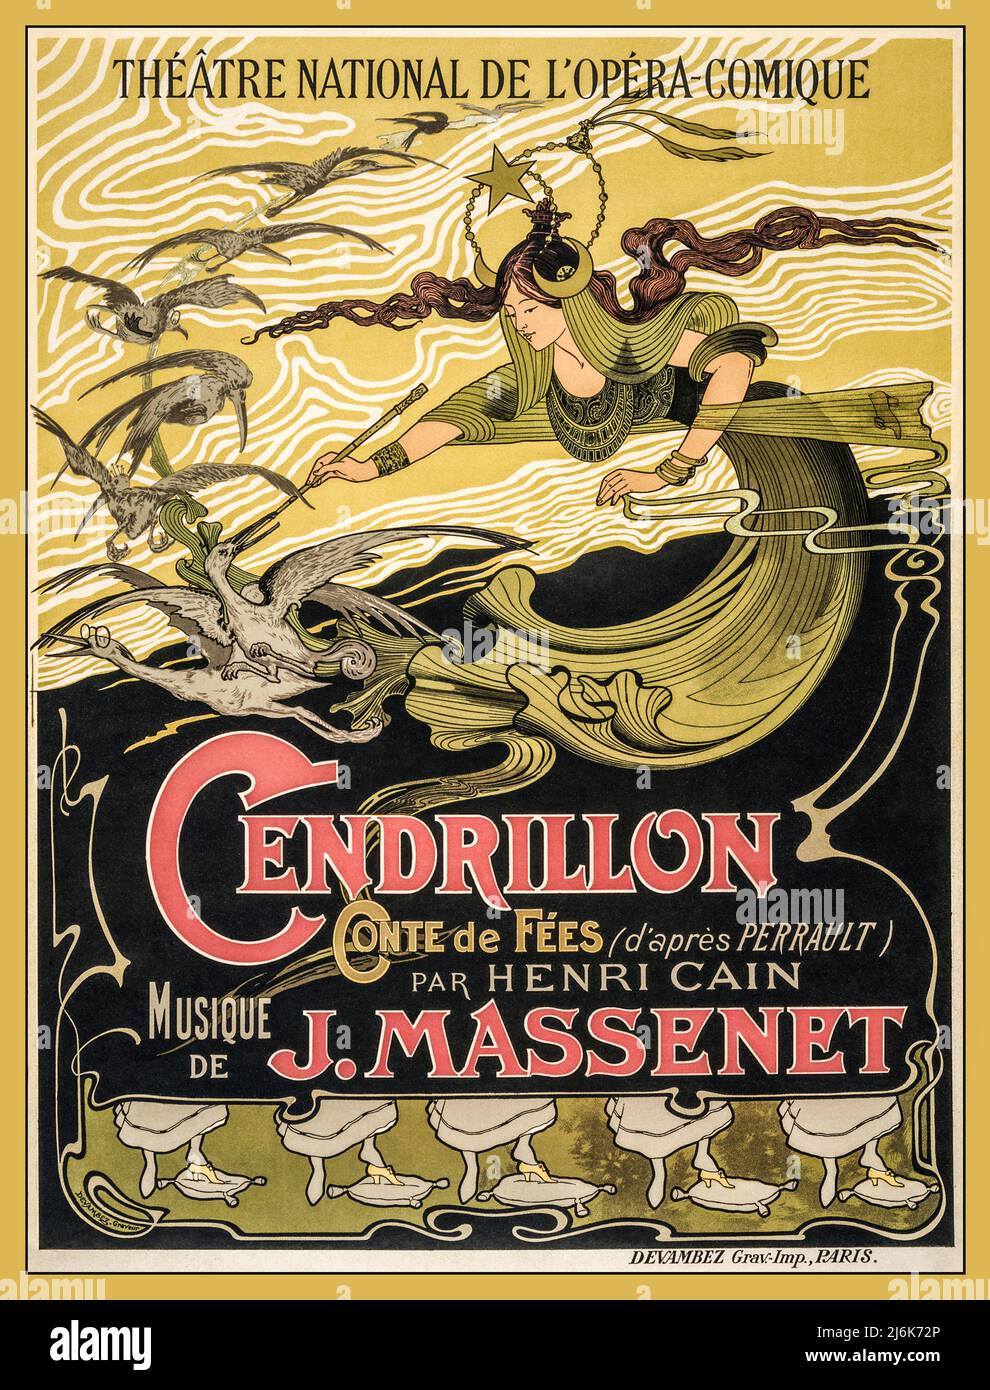 Vintage Paris Theatre Poster Émile Bertrand's Poster für Jules Massenets Cendrillon, das für die première-Performance im Théâtre National de l'Opéra-Comique, Paris, wirbt. Datum 1899 (Poster) : Lithographie, Farbe. Stockfoto